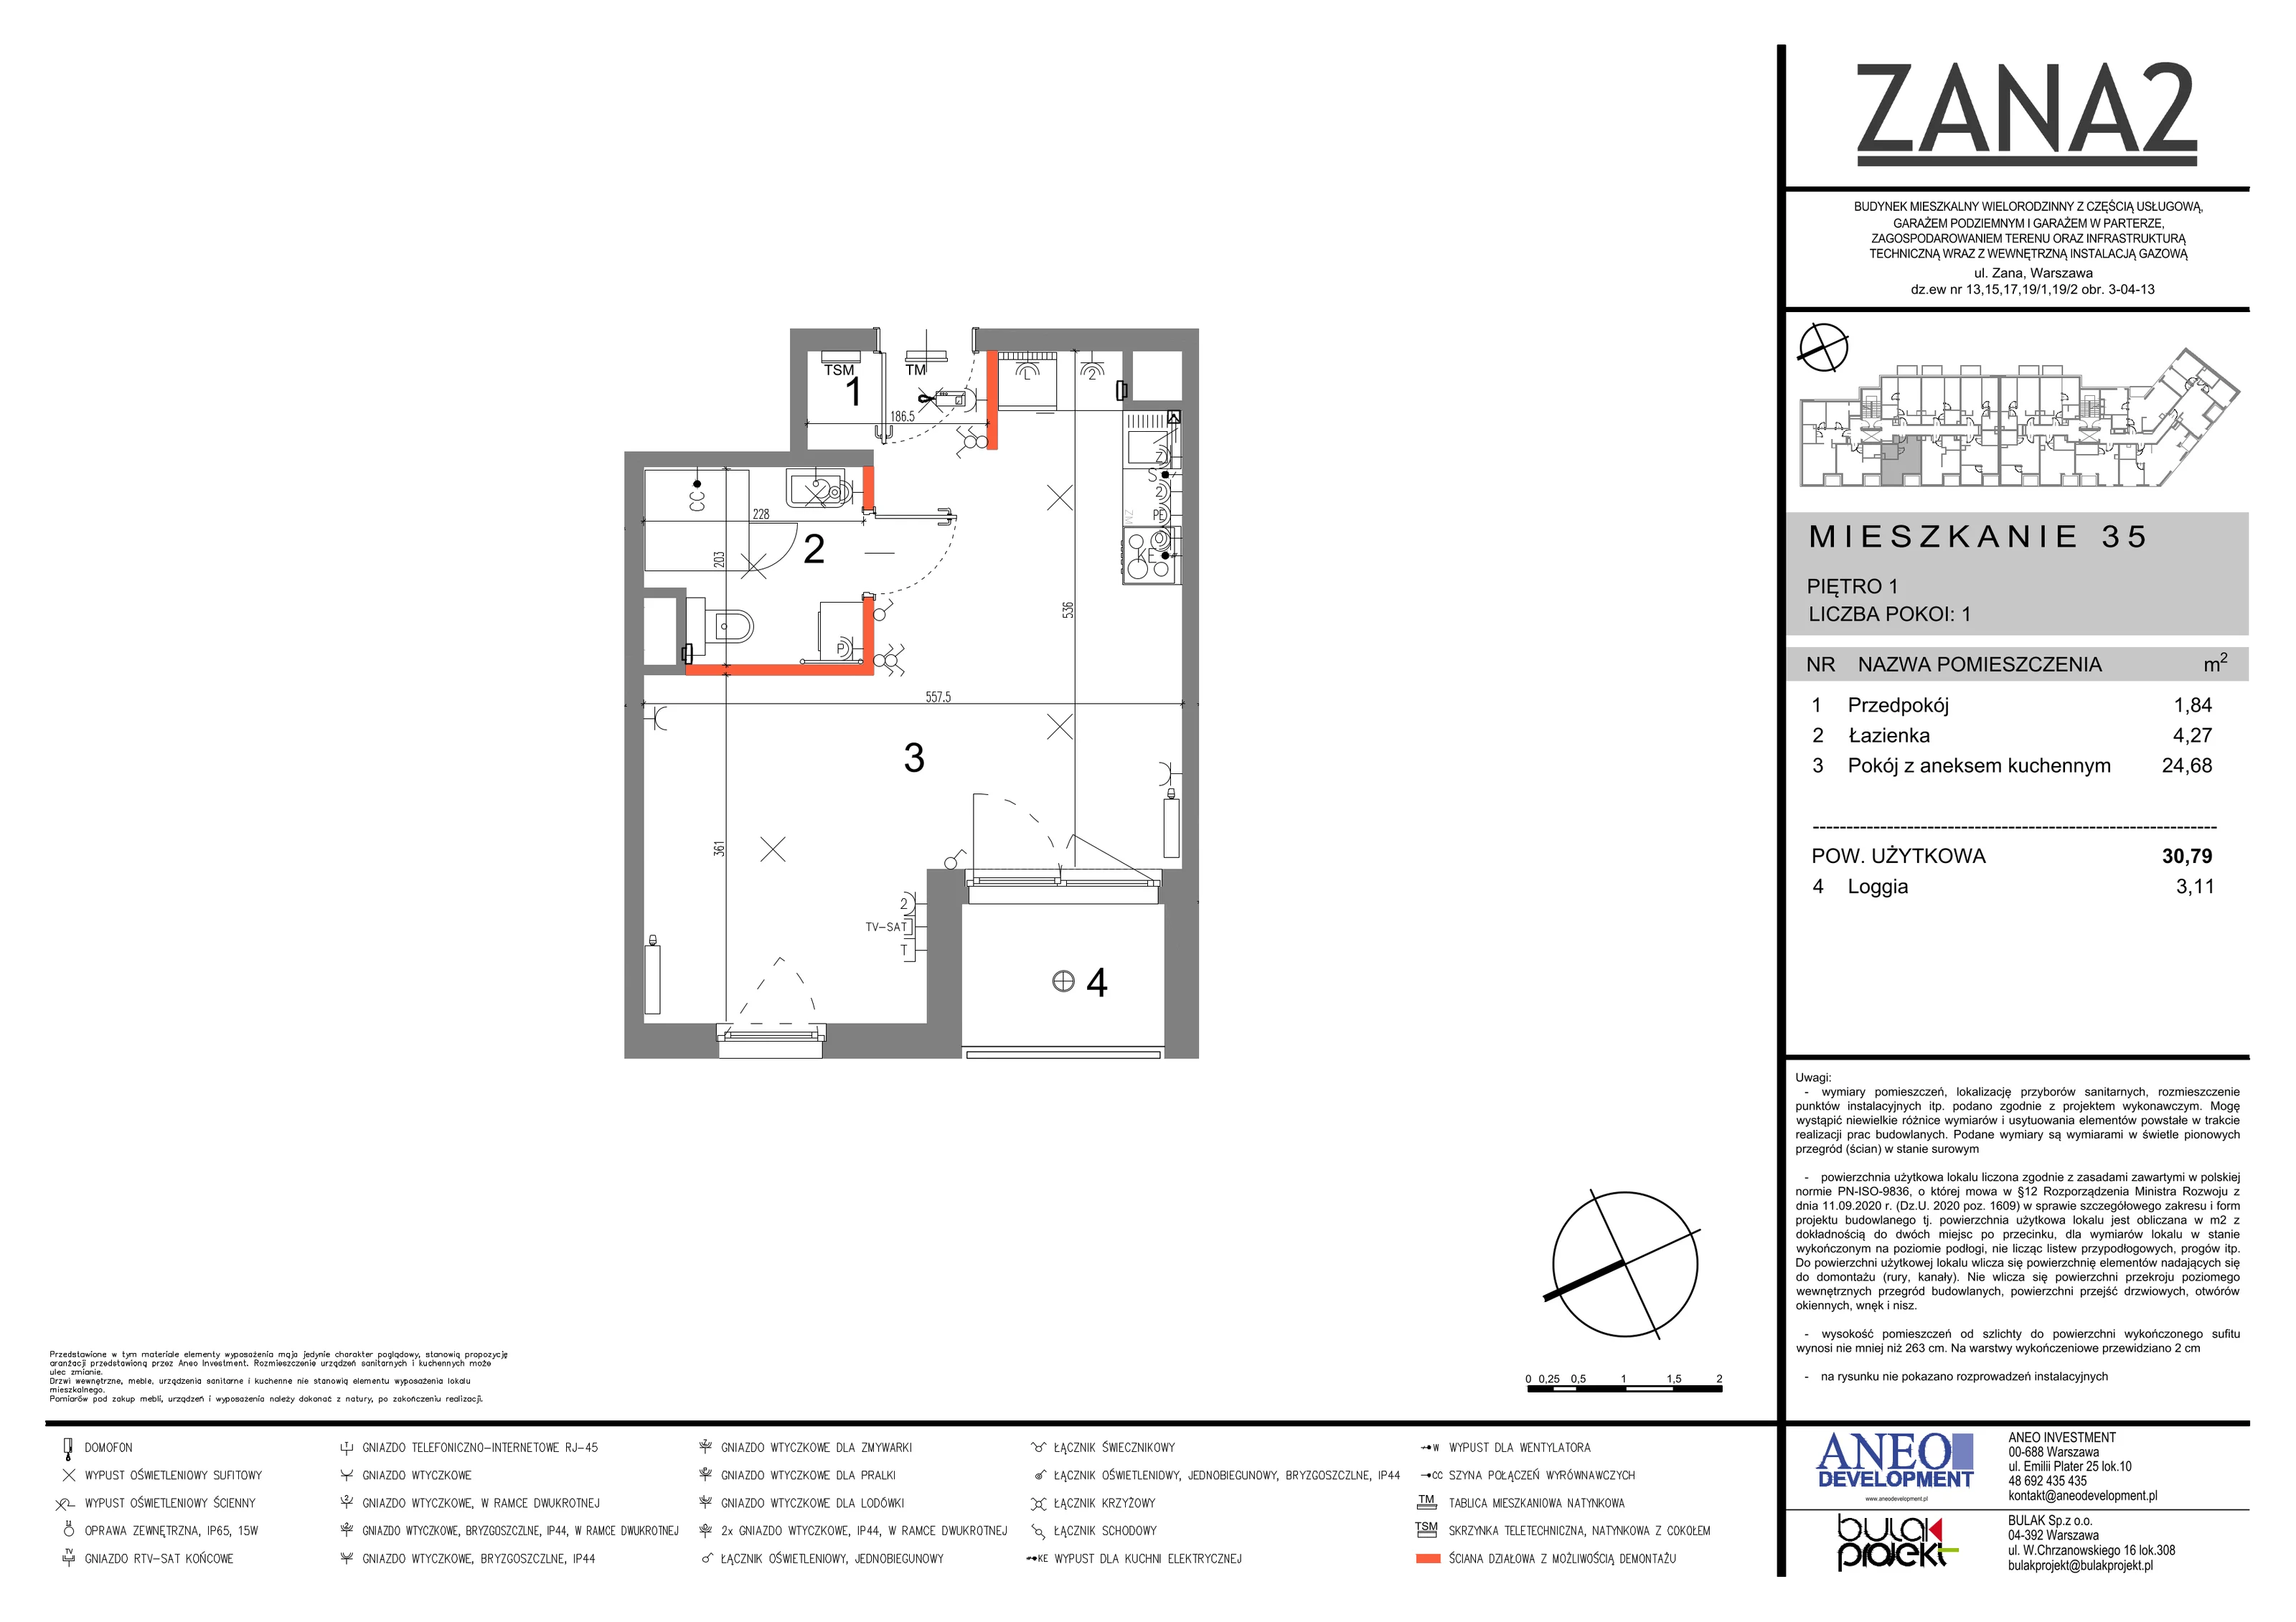 Mieszkanie 30,79 m², piętro 1, oferta nr 35, Zana 2, Warszawa, Praga Południe, Gocławek, ul. Tomasza Zana